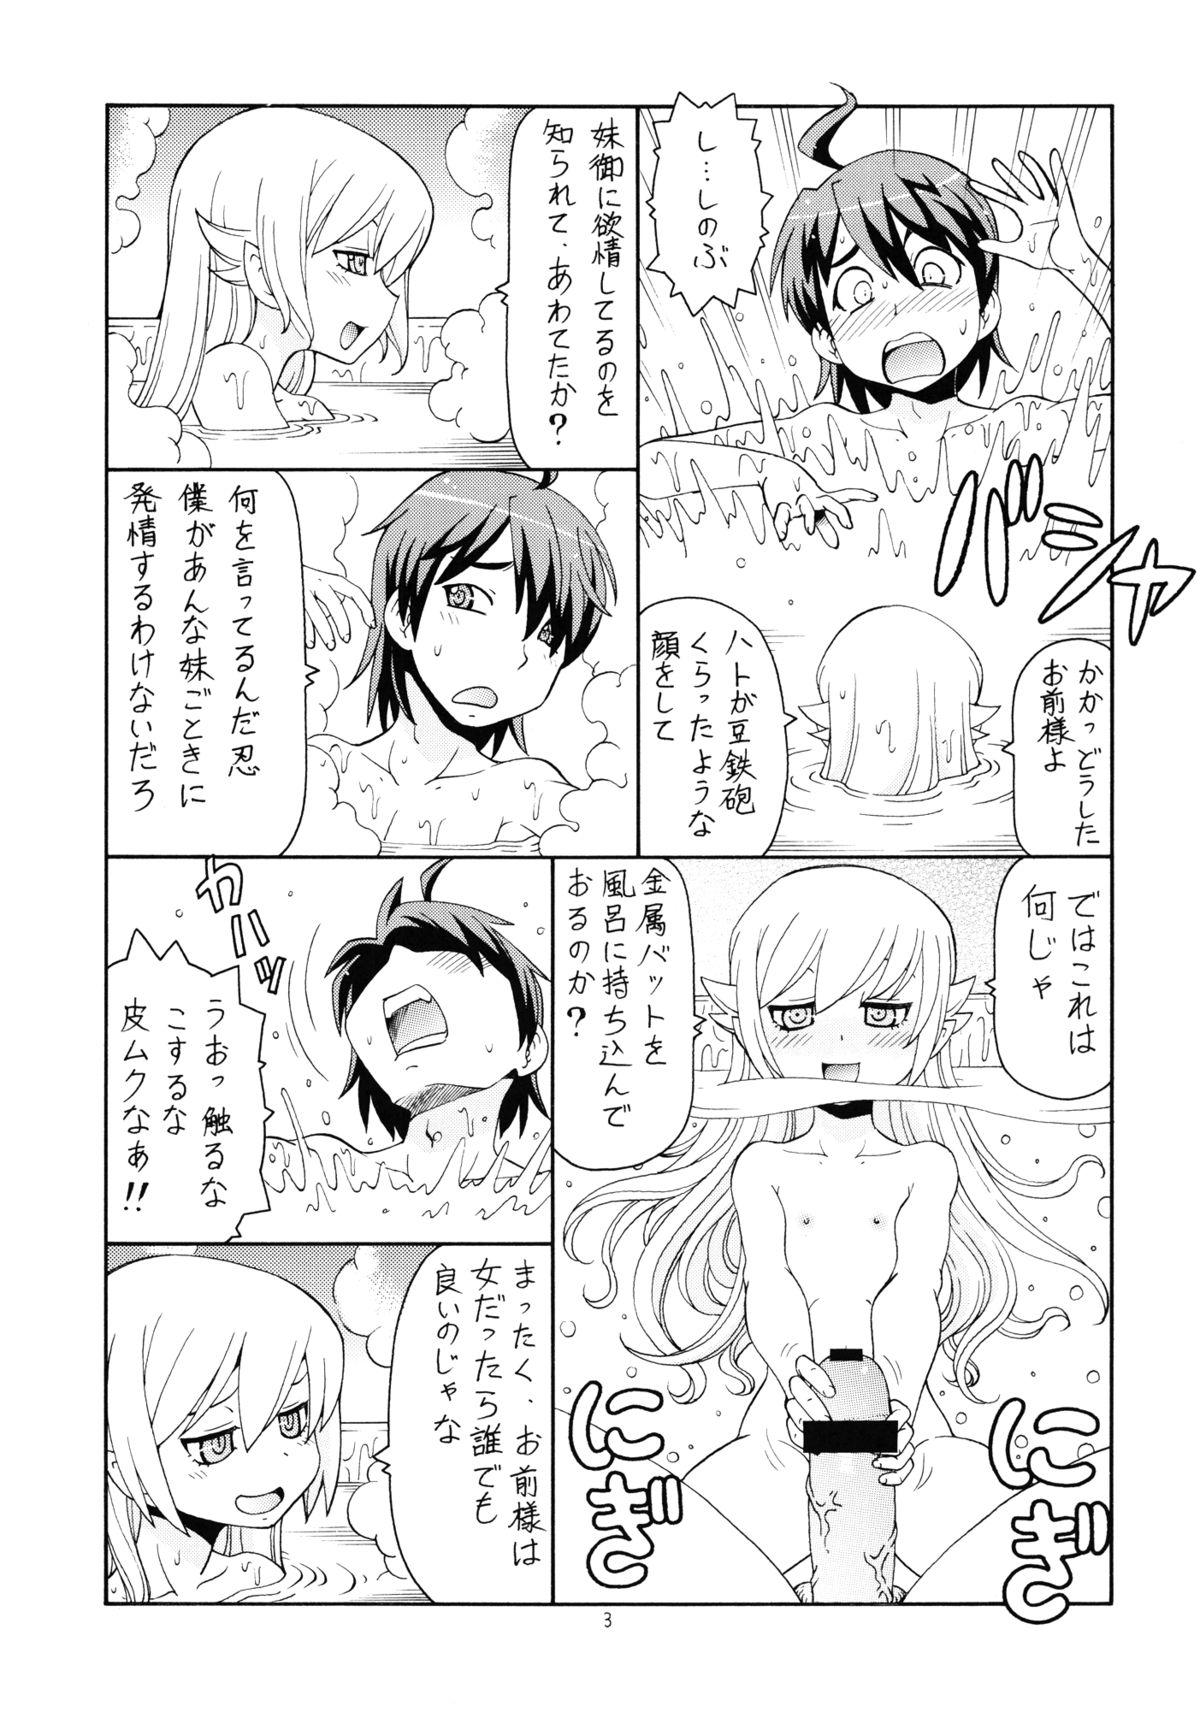 Shaven Hito ni Hakanai to Kaite "Araragi" to Yomu 5&6 - Bakemonogatari Couple Porn - Page 4